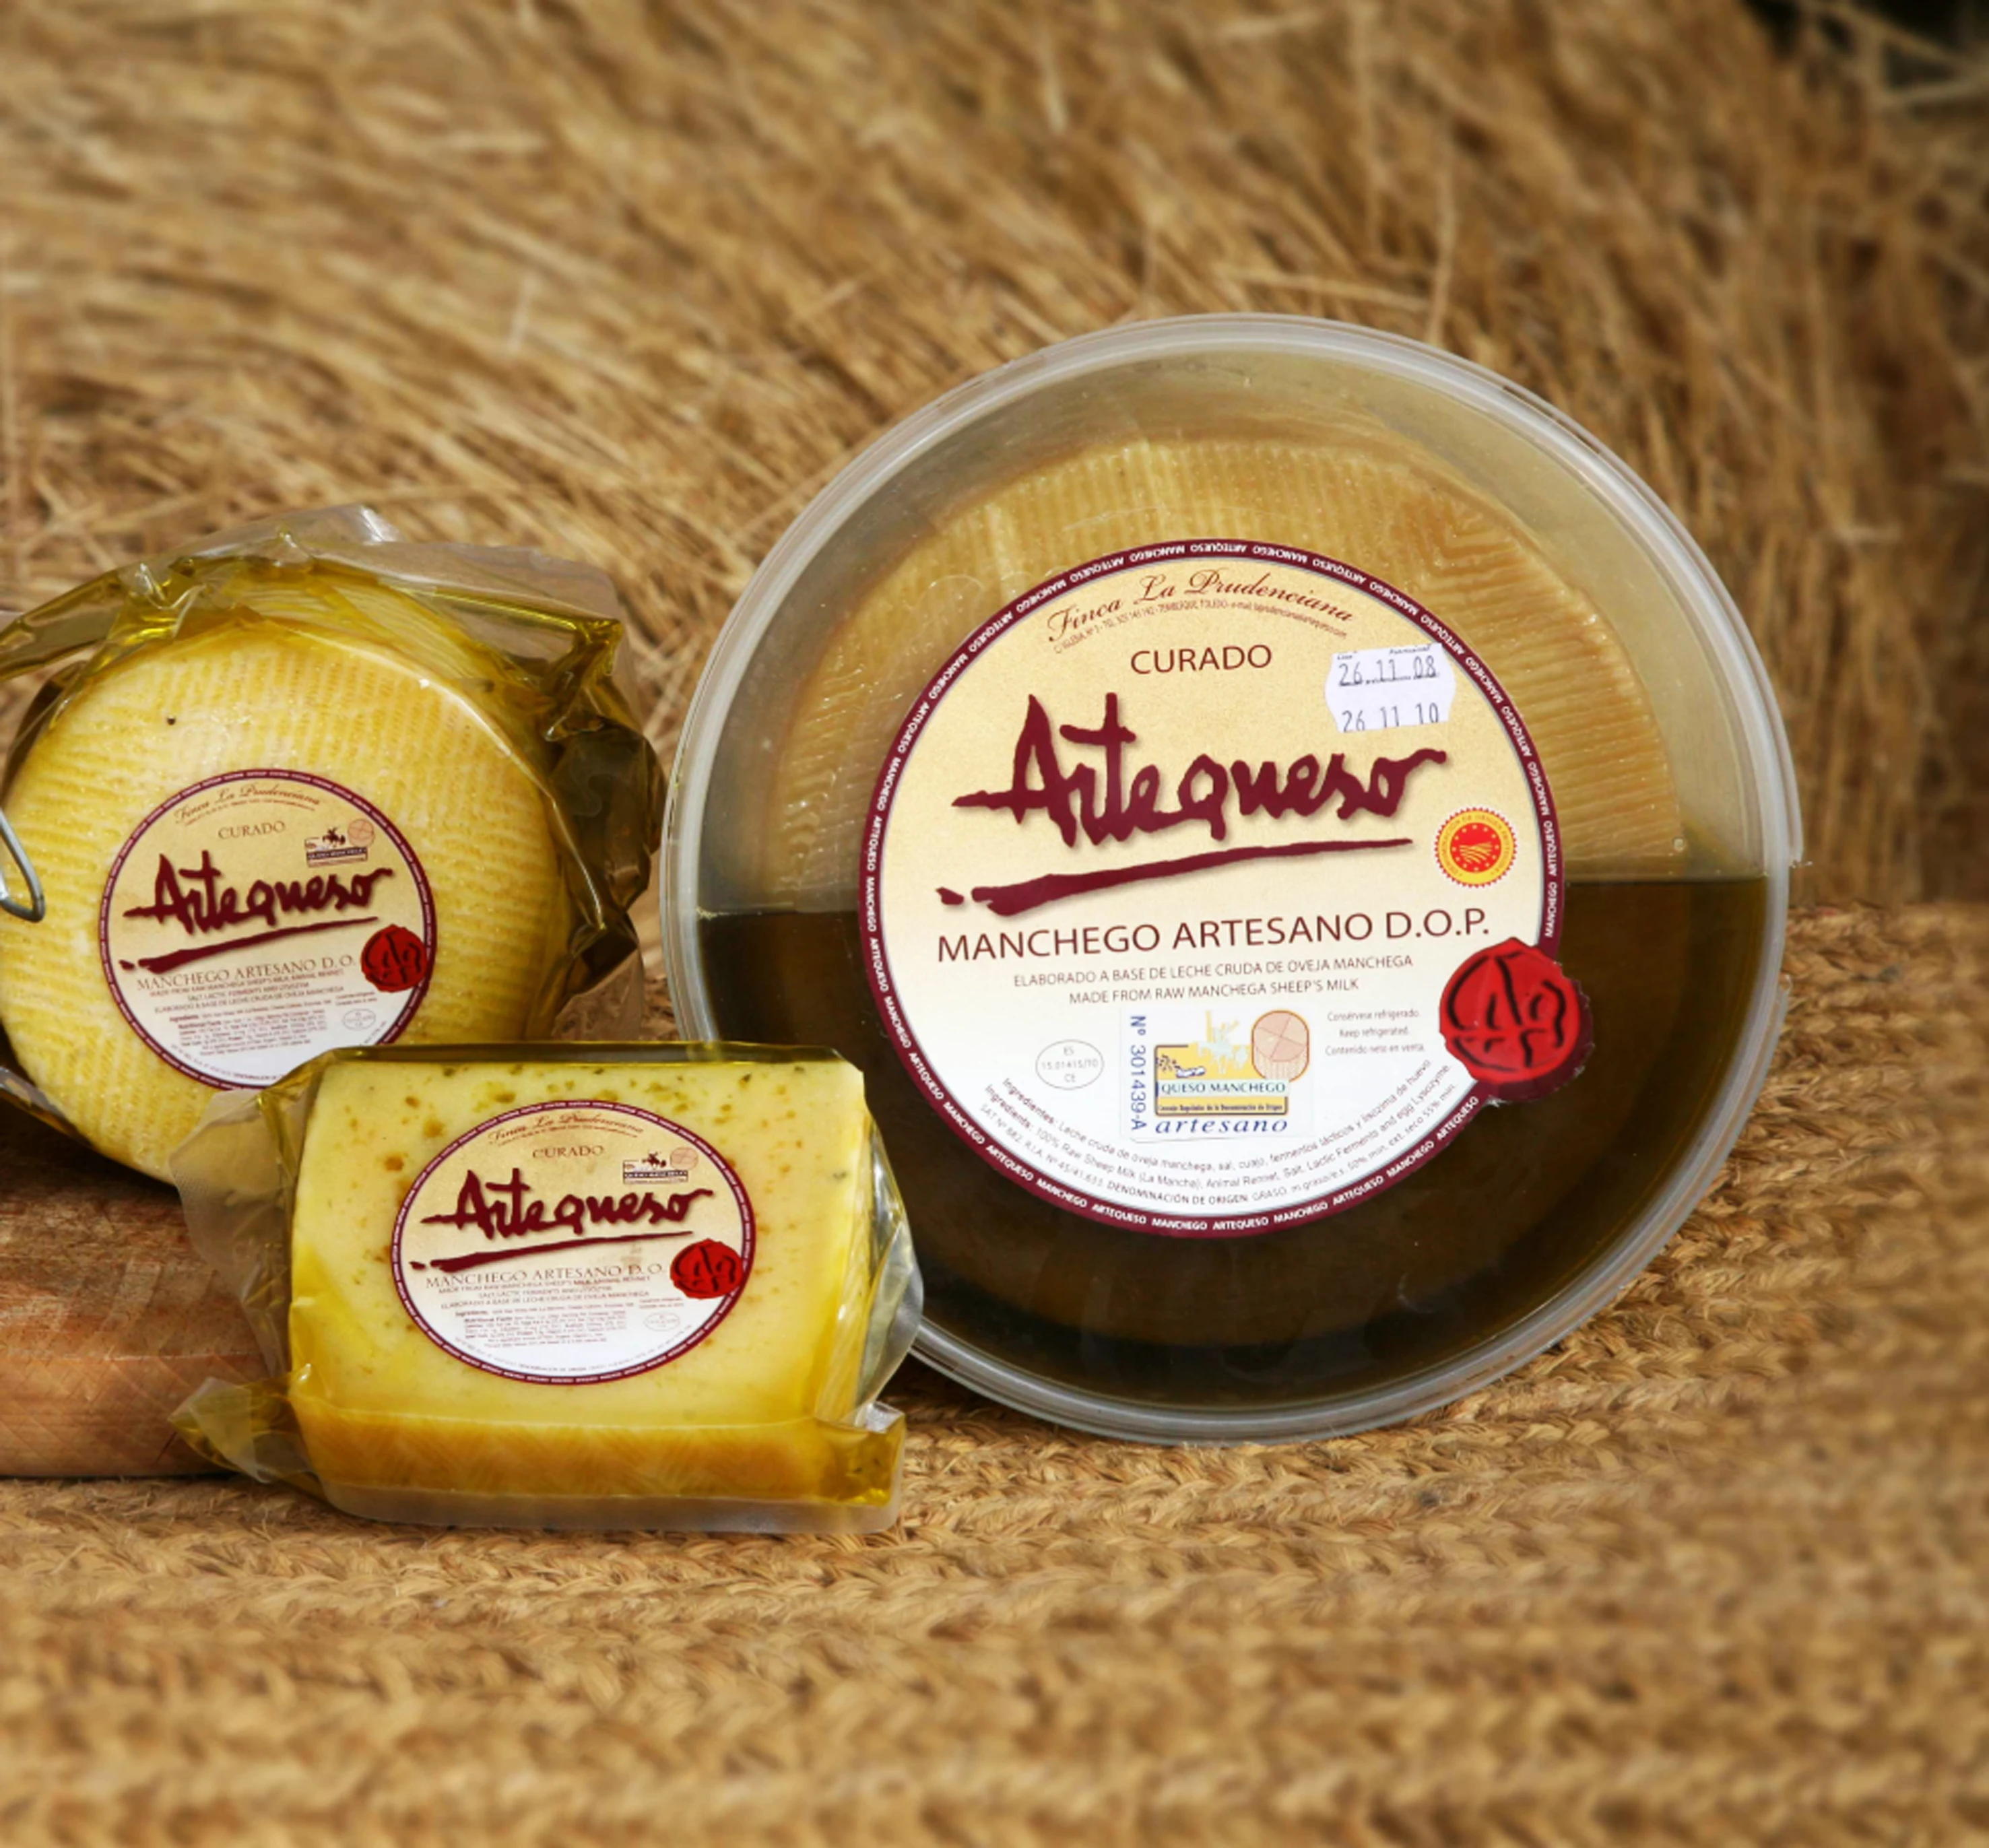 Сыр затвердевает оливковым маслом D.O.P. Артекесо. Штука 0 250 кг|Другие фаст-фуд| |